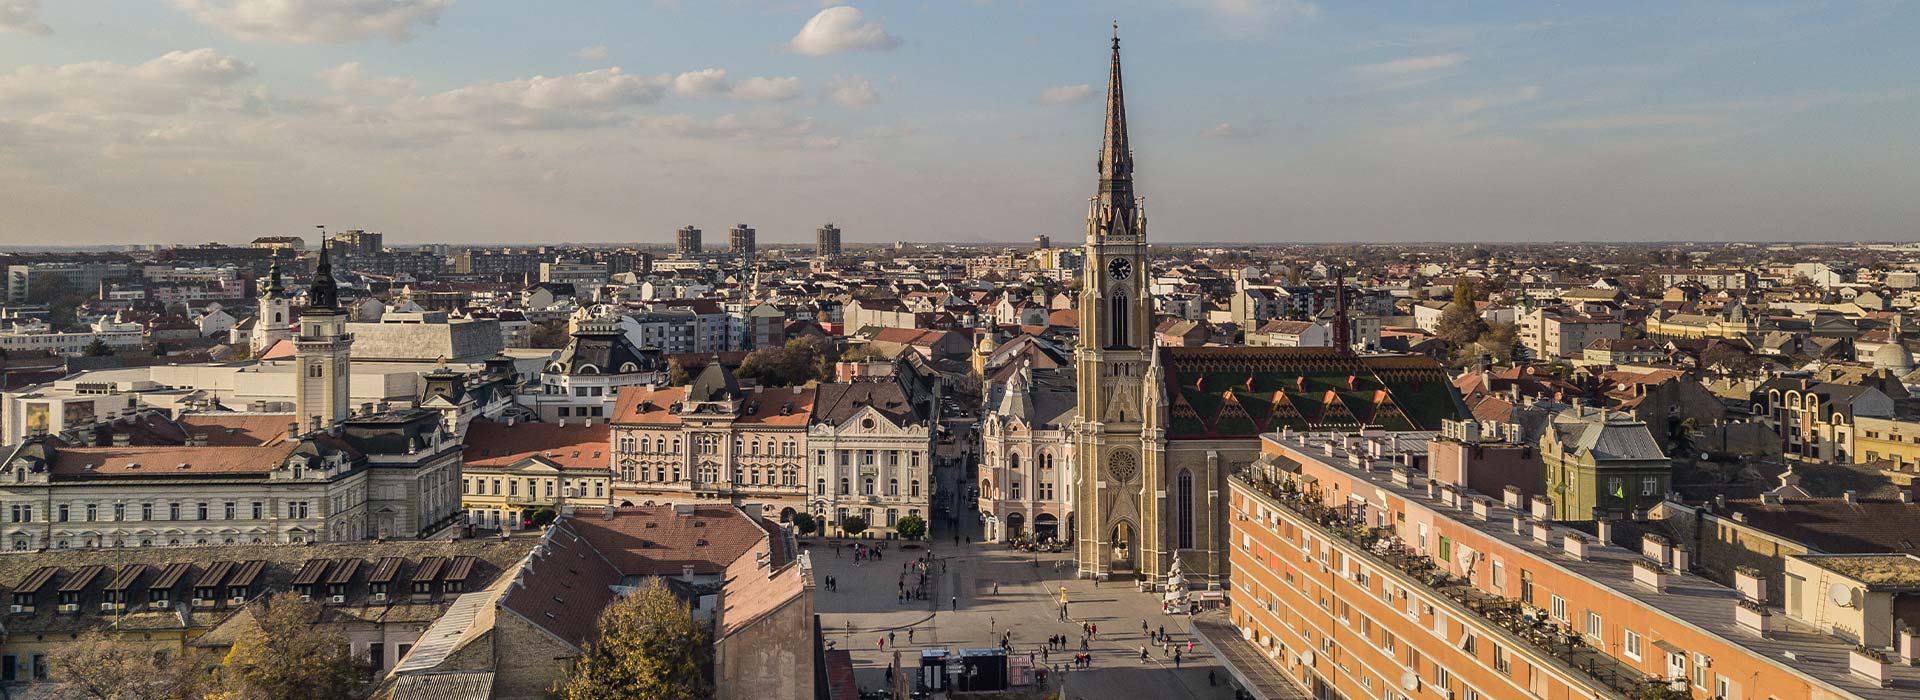 Rent a car Stari grad | Novi Sad, Serbia